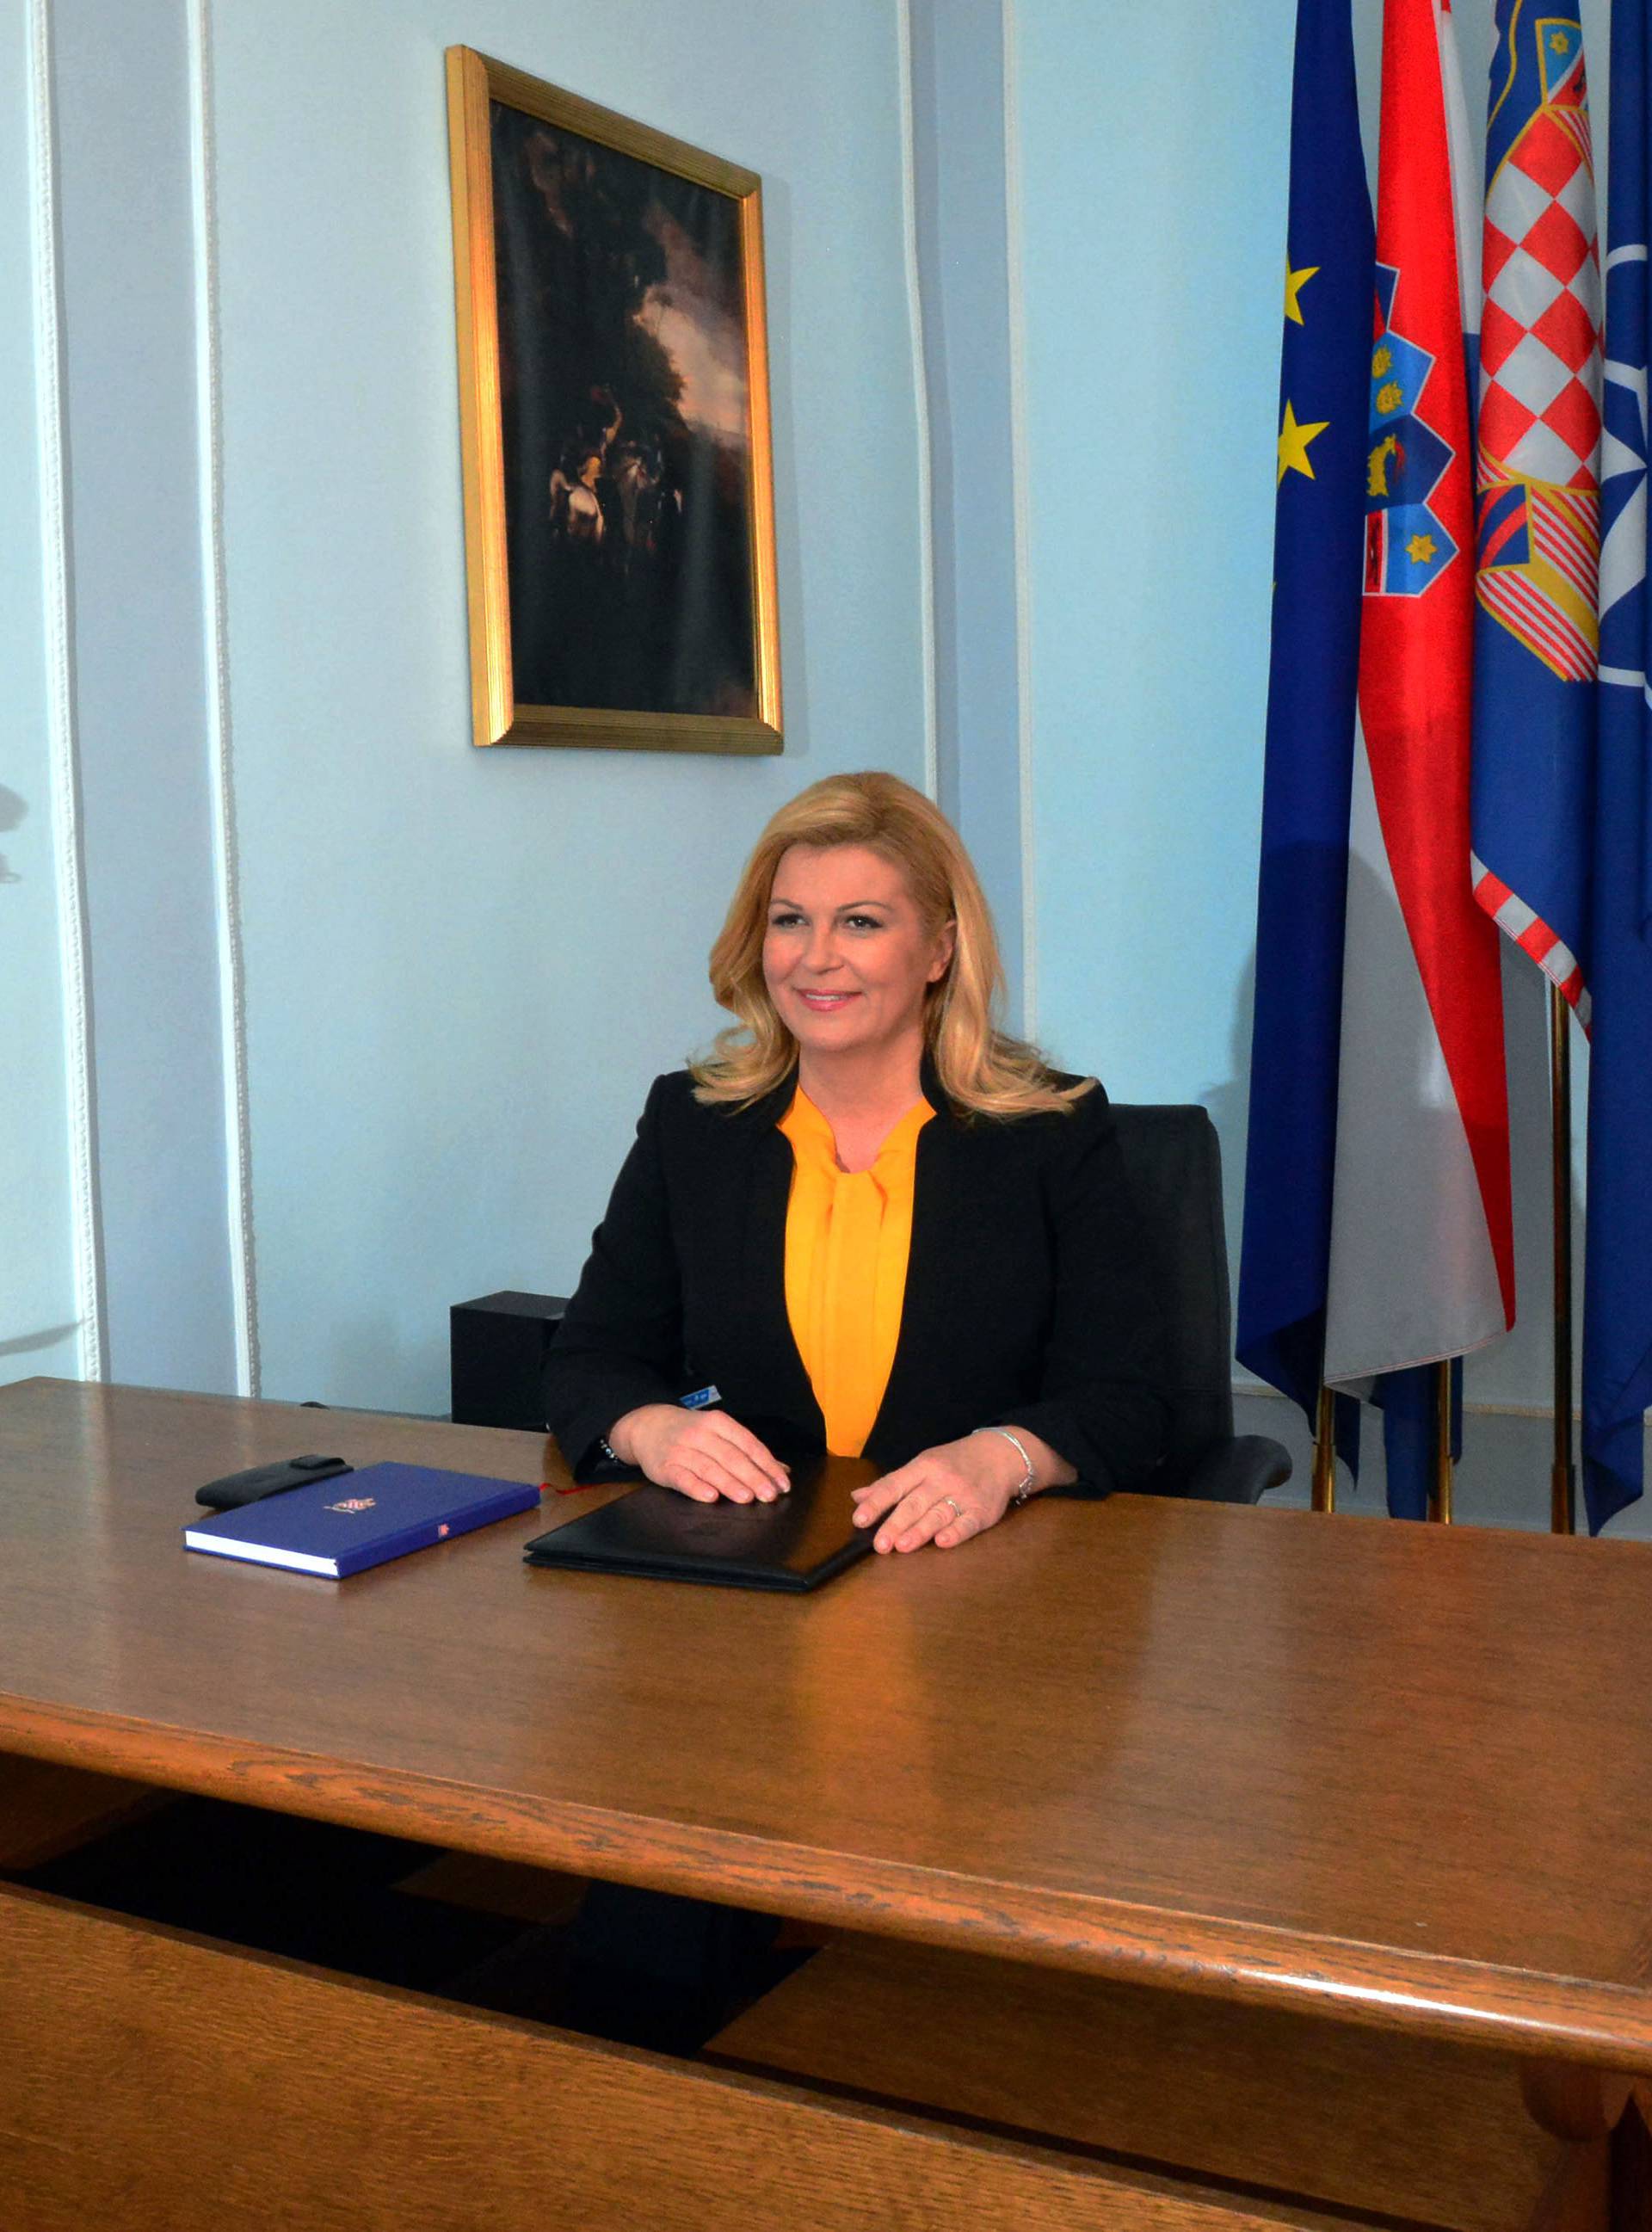 Predsjednica u Požegi: Nema drugorazrednog dijela Hrvatske